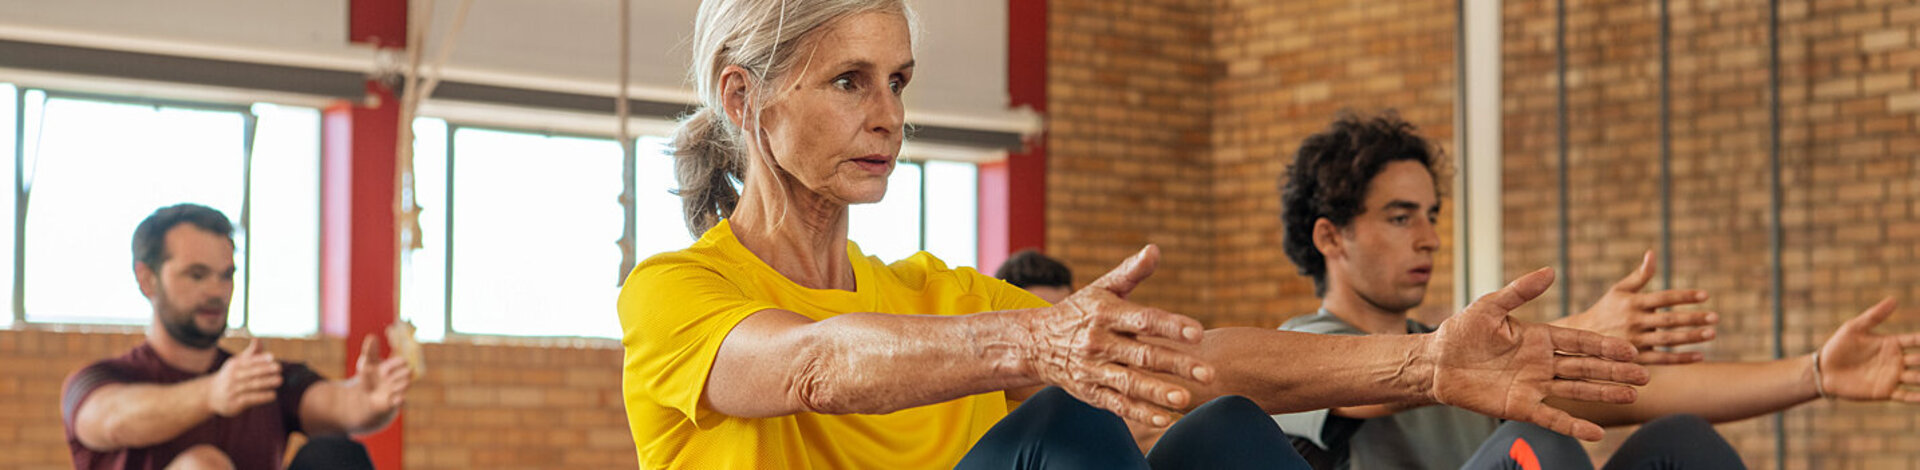 Eine ältere Frau und ein jüngerer Mann trainieren. Mit Rehasport gelingt es, nach Unfällen oder Krankheiten wieder beweglich zu werden.